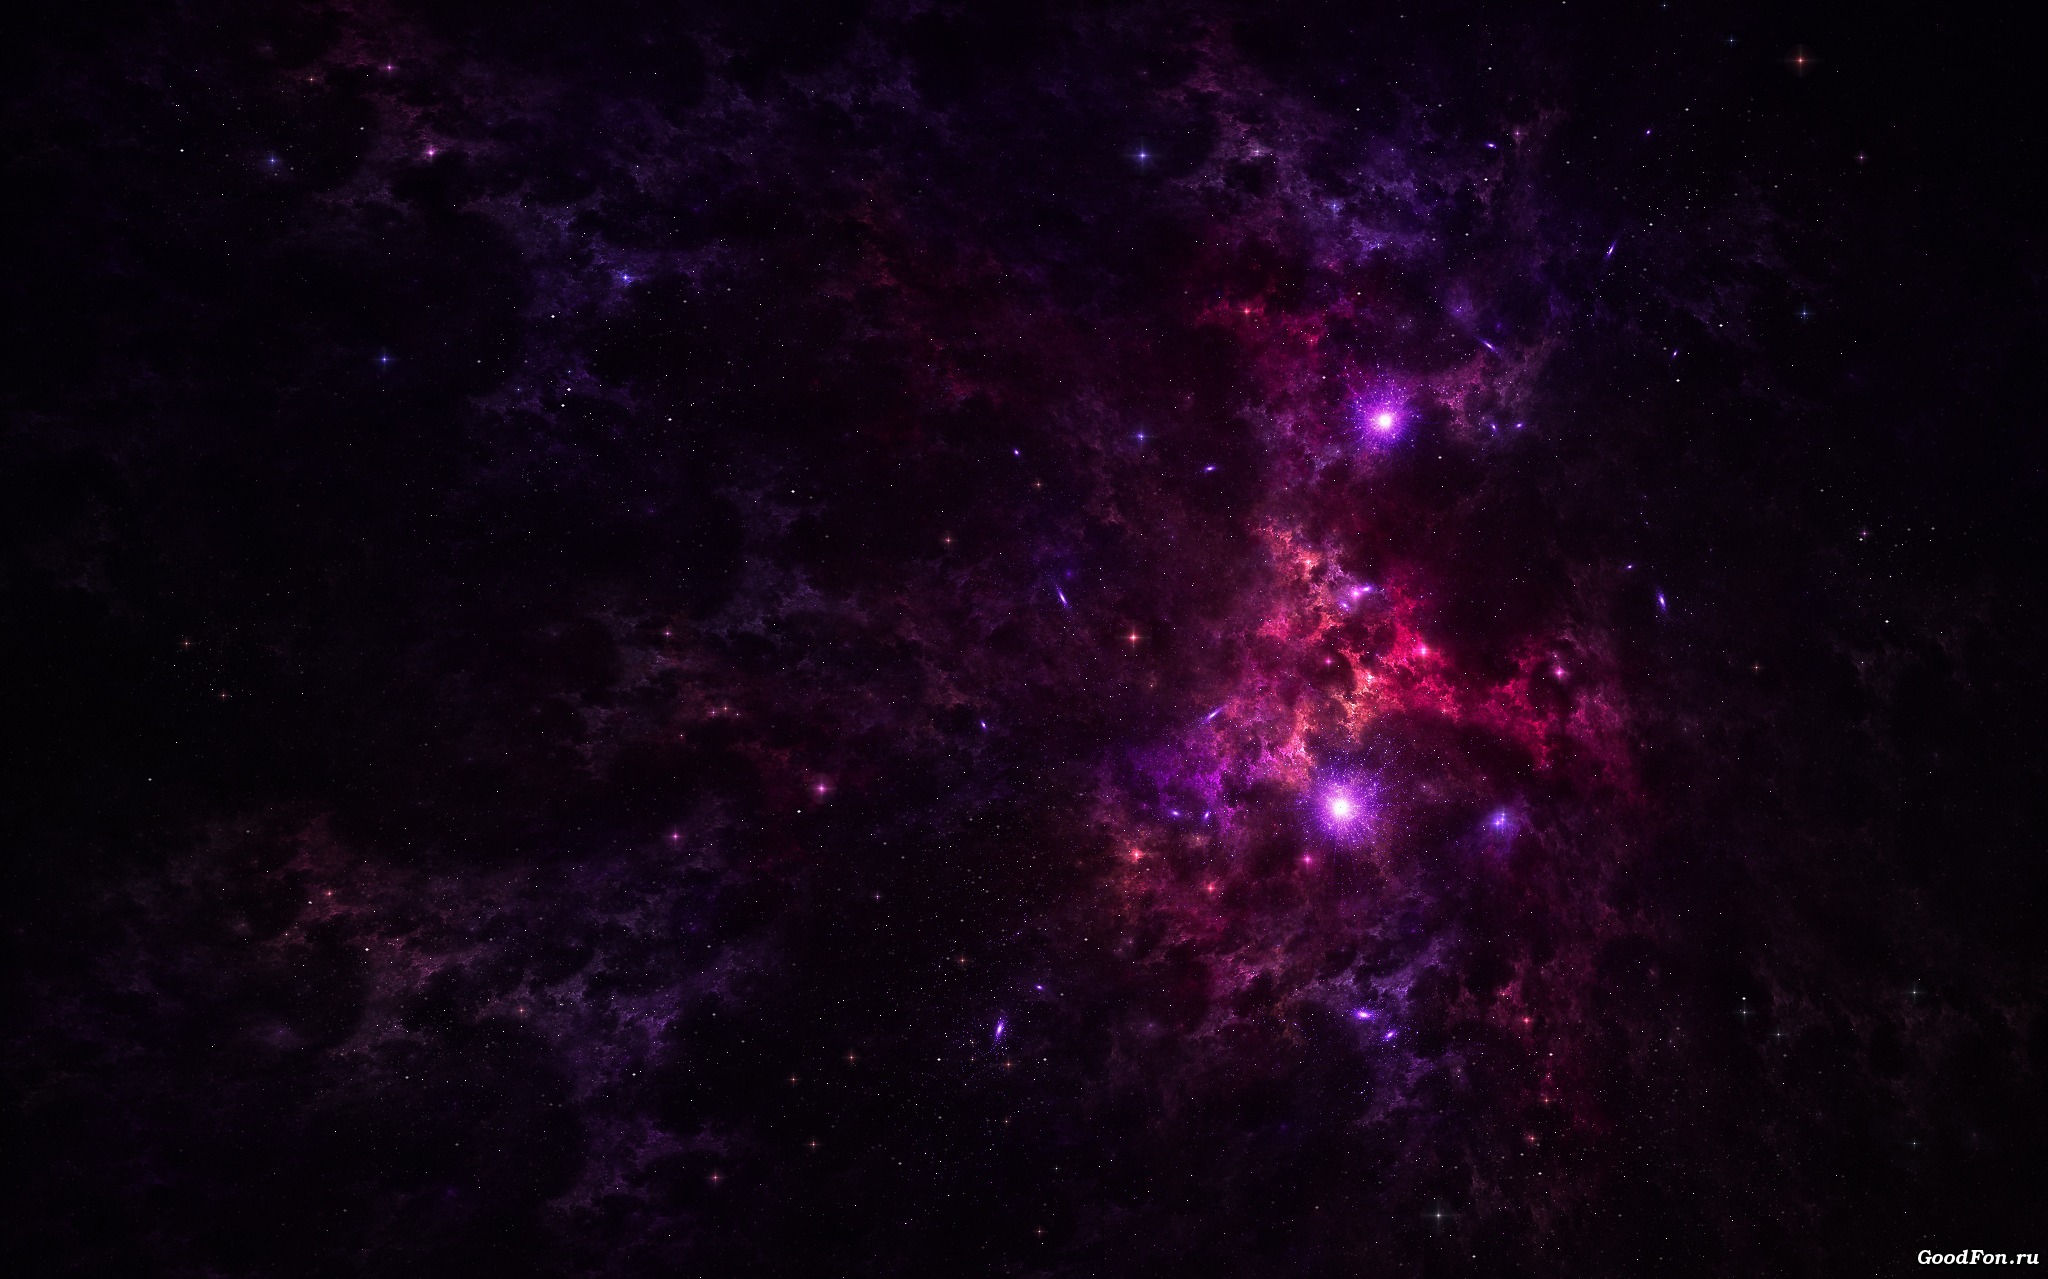 Обои Фиолетовая туманность картинки на рабочий стол на тему Космос - скачать скачать